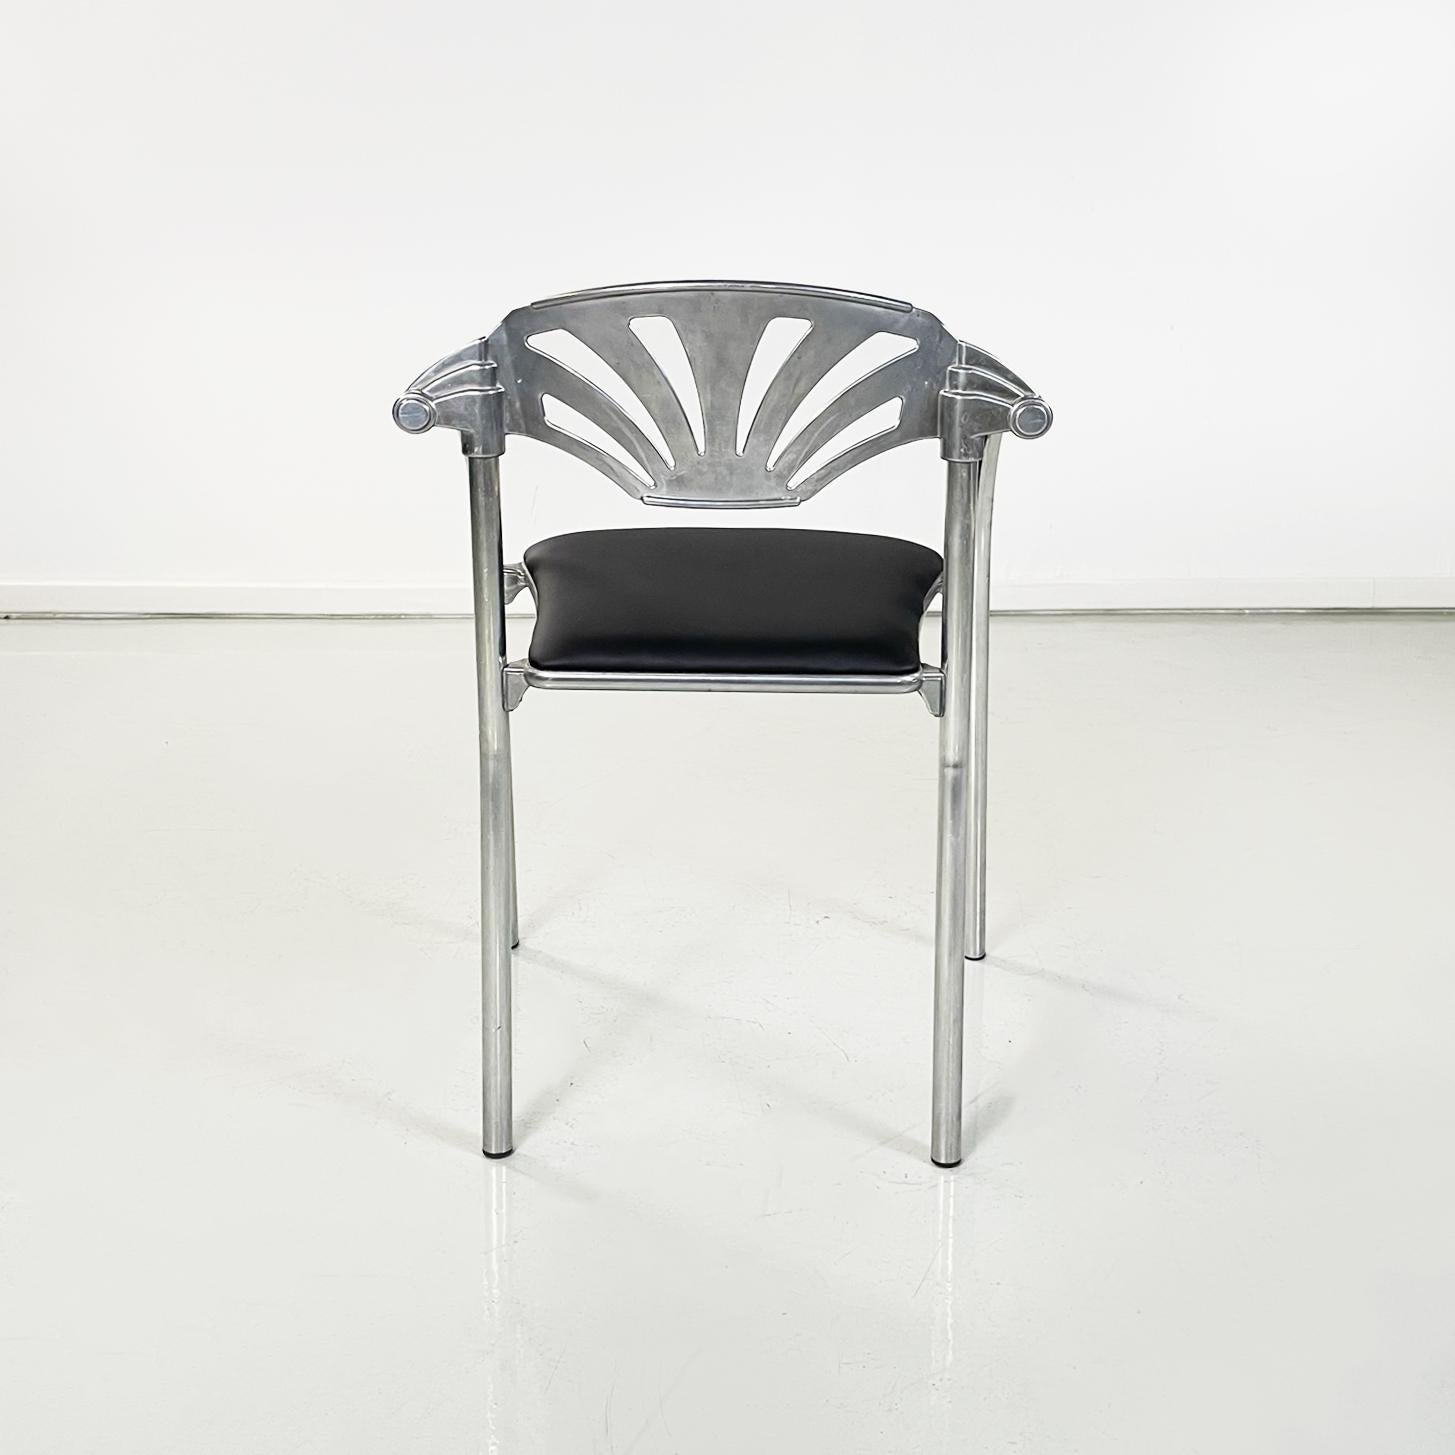 Aluminum Italian modern black sky Chairs Alisea by Lisa Bross for Studio Simonetti, 1980s